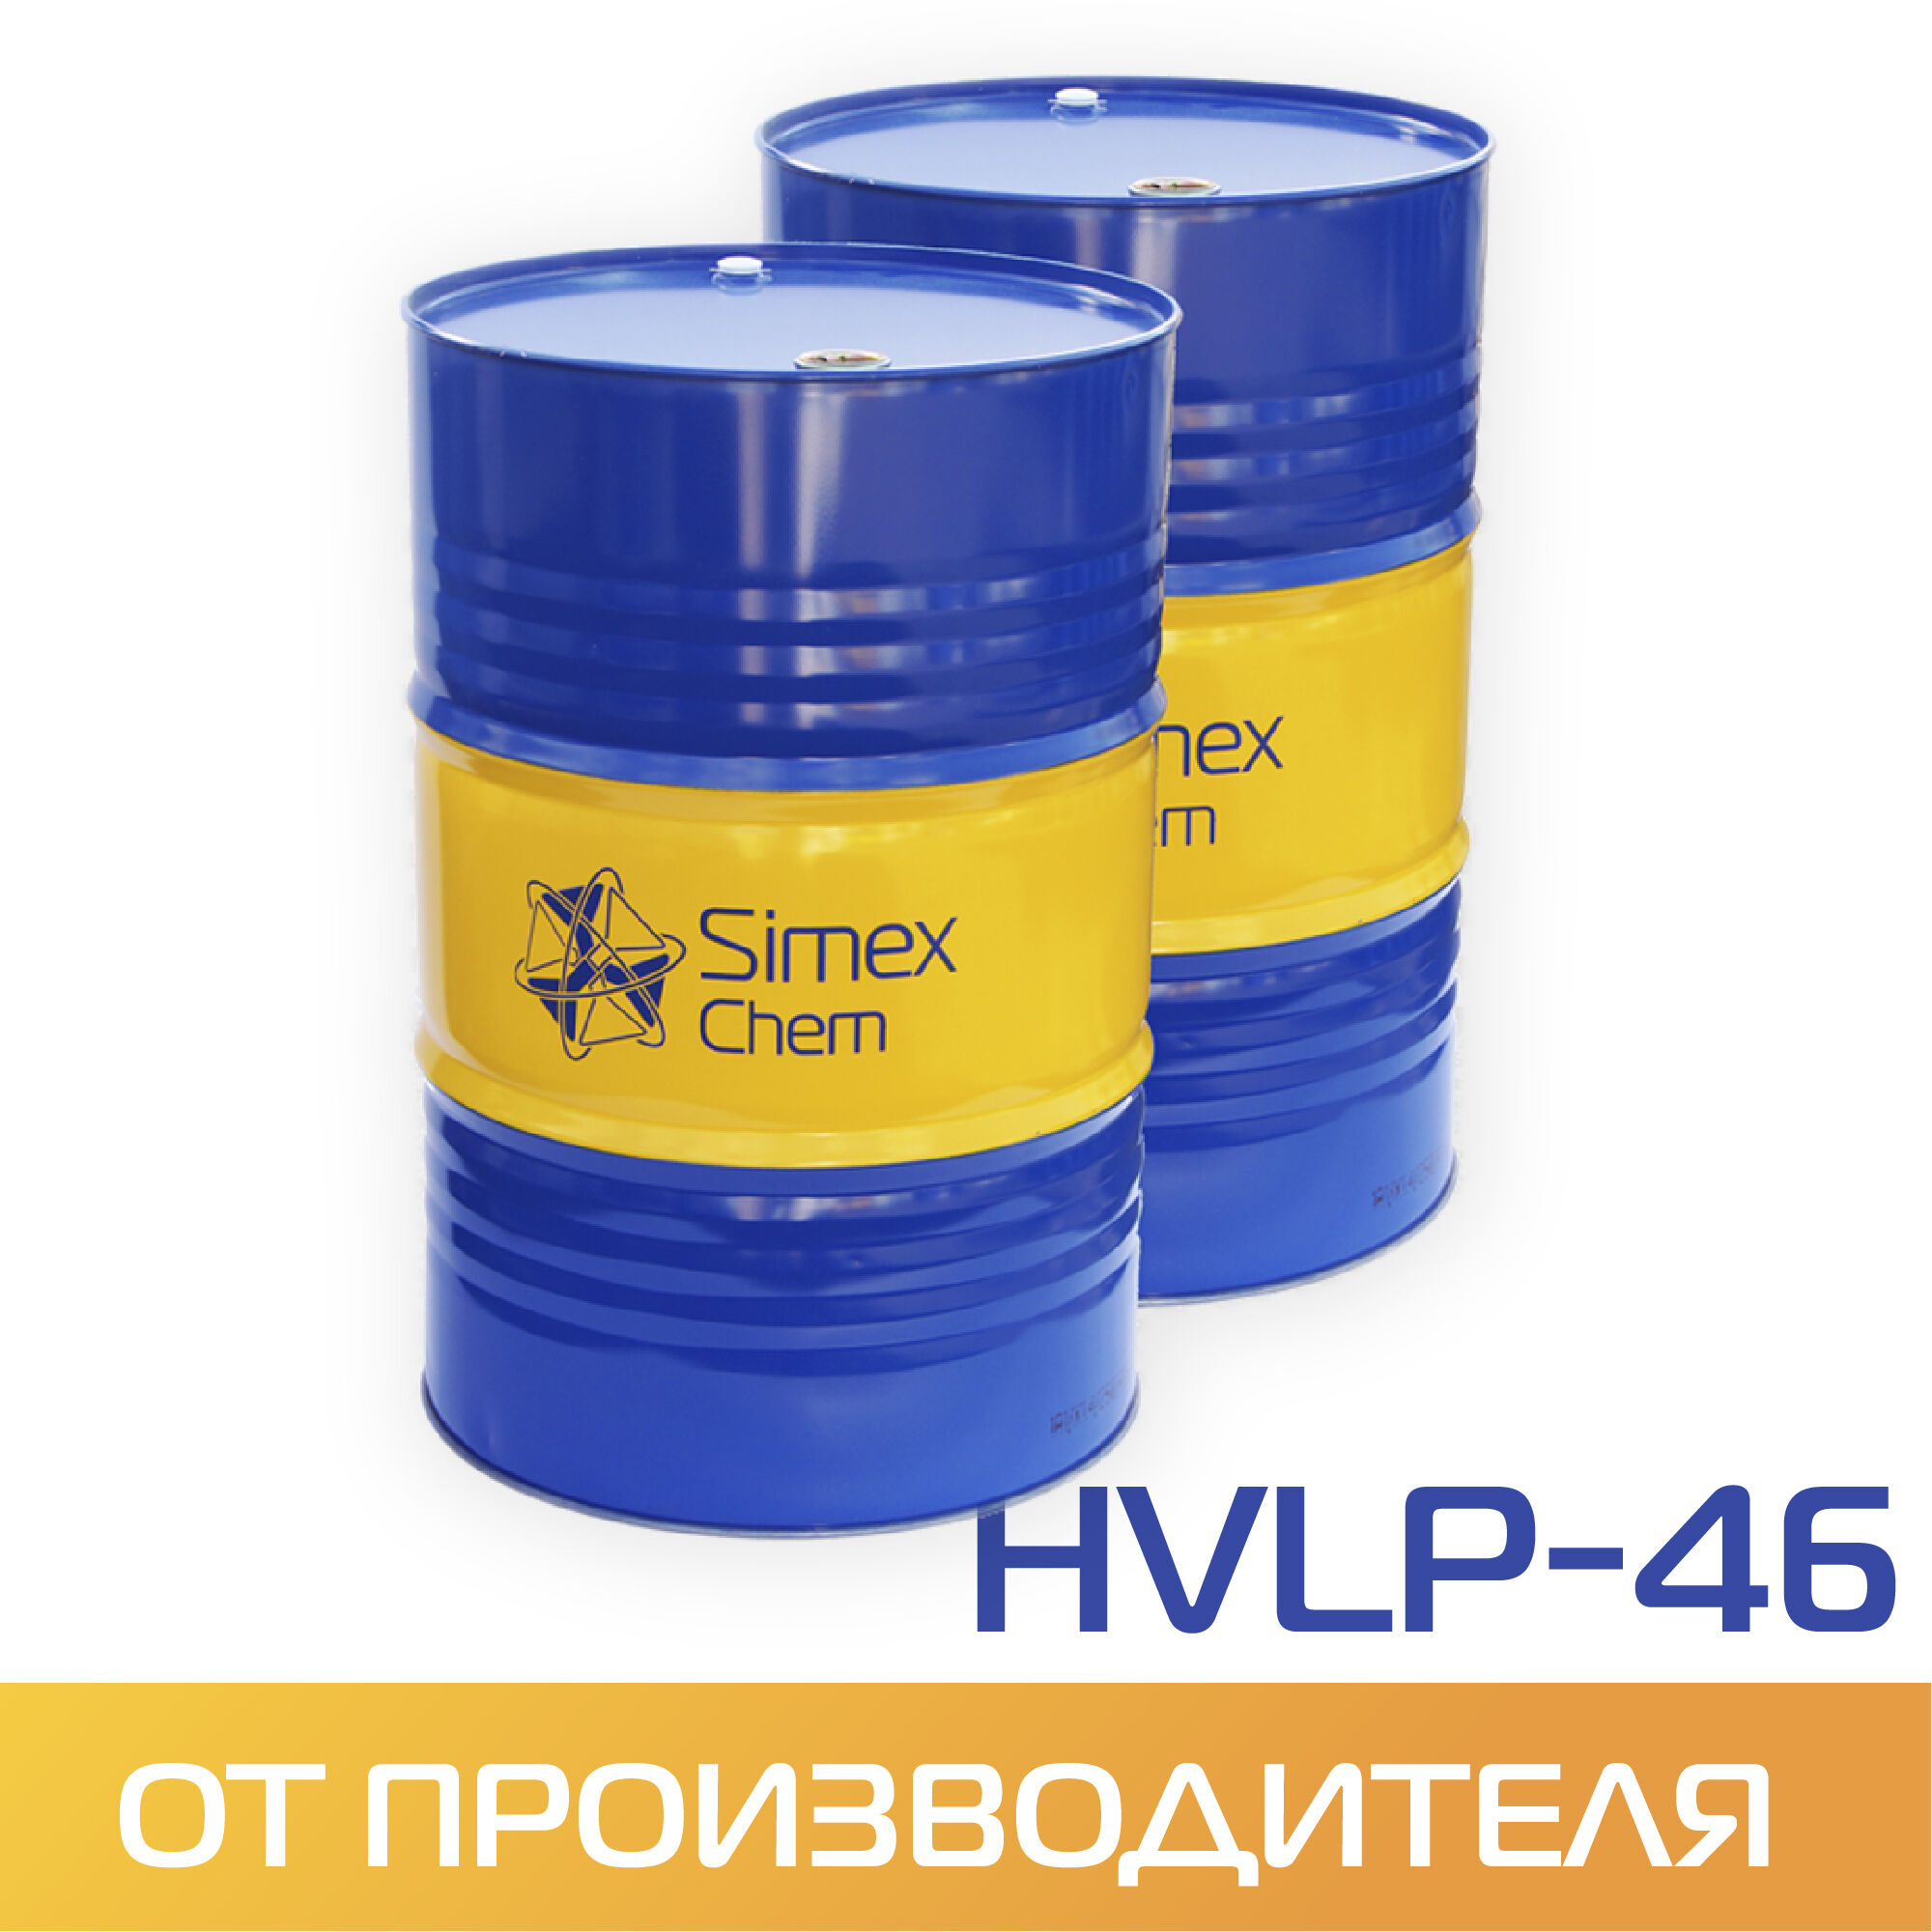 Масло гидравлическое HVLP-46 бочка 180 кг